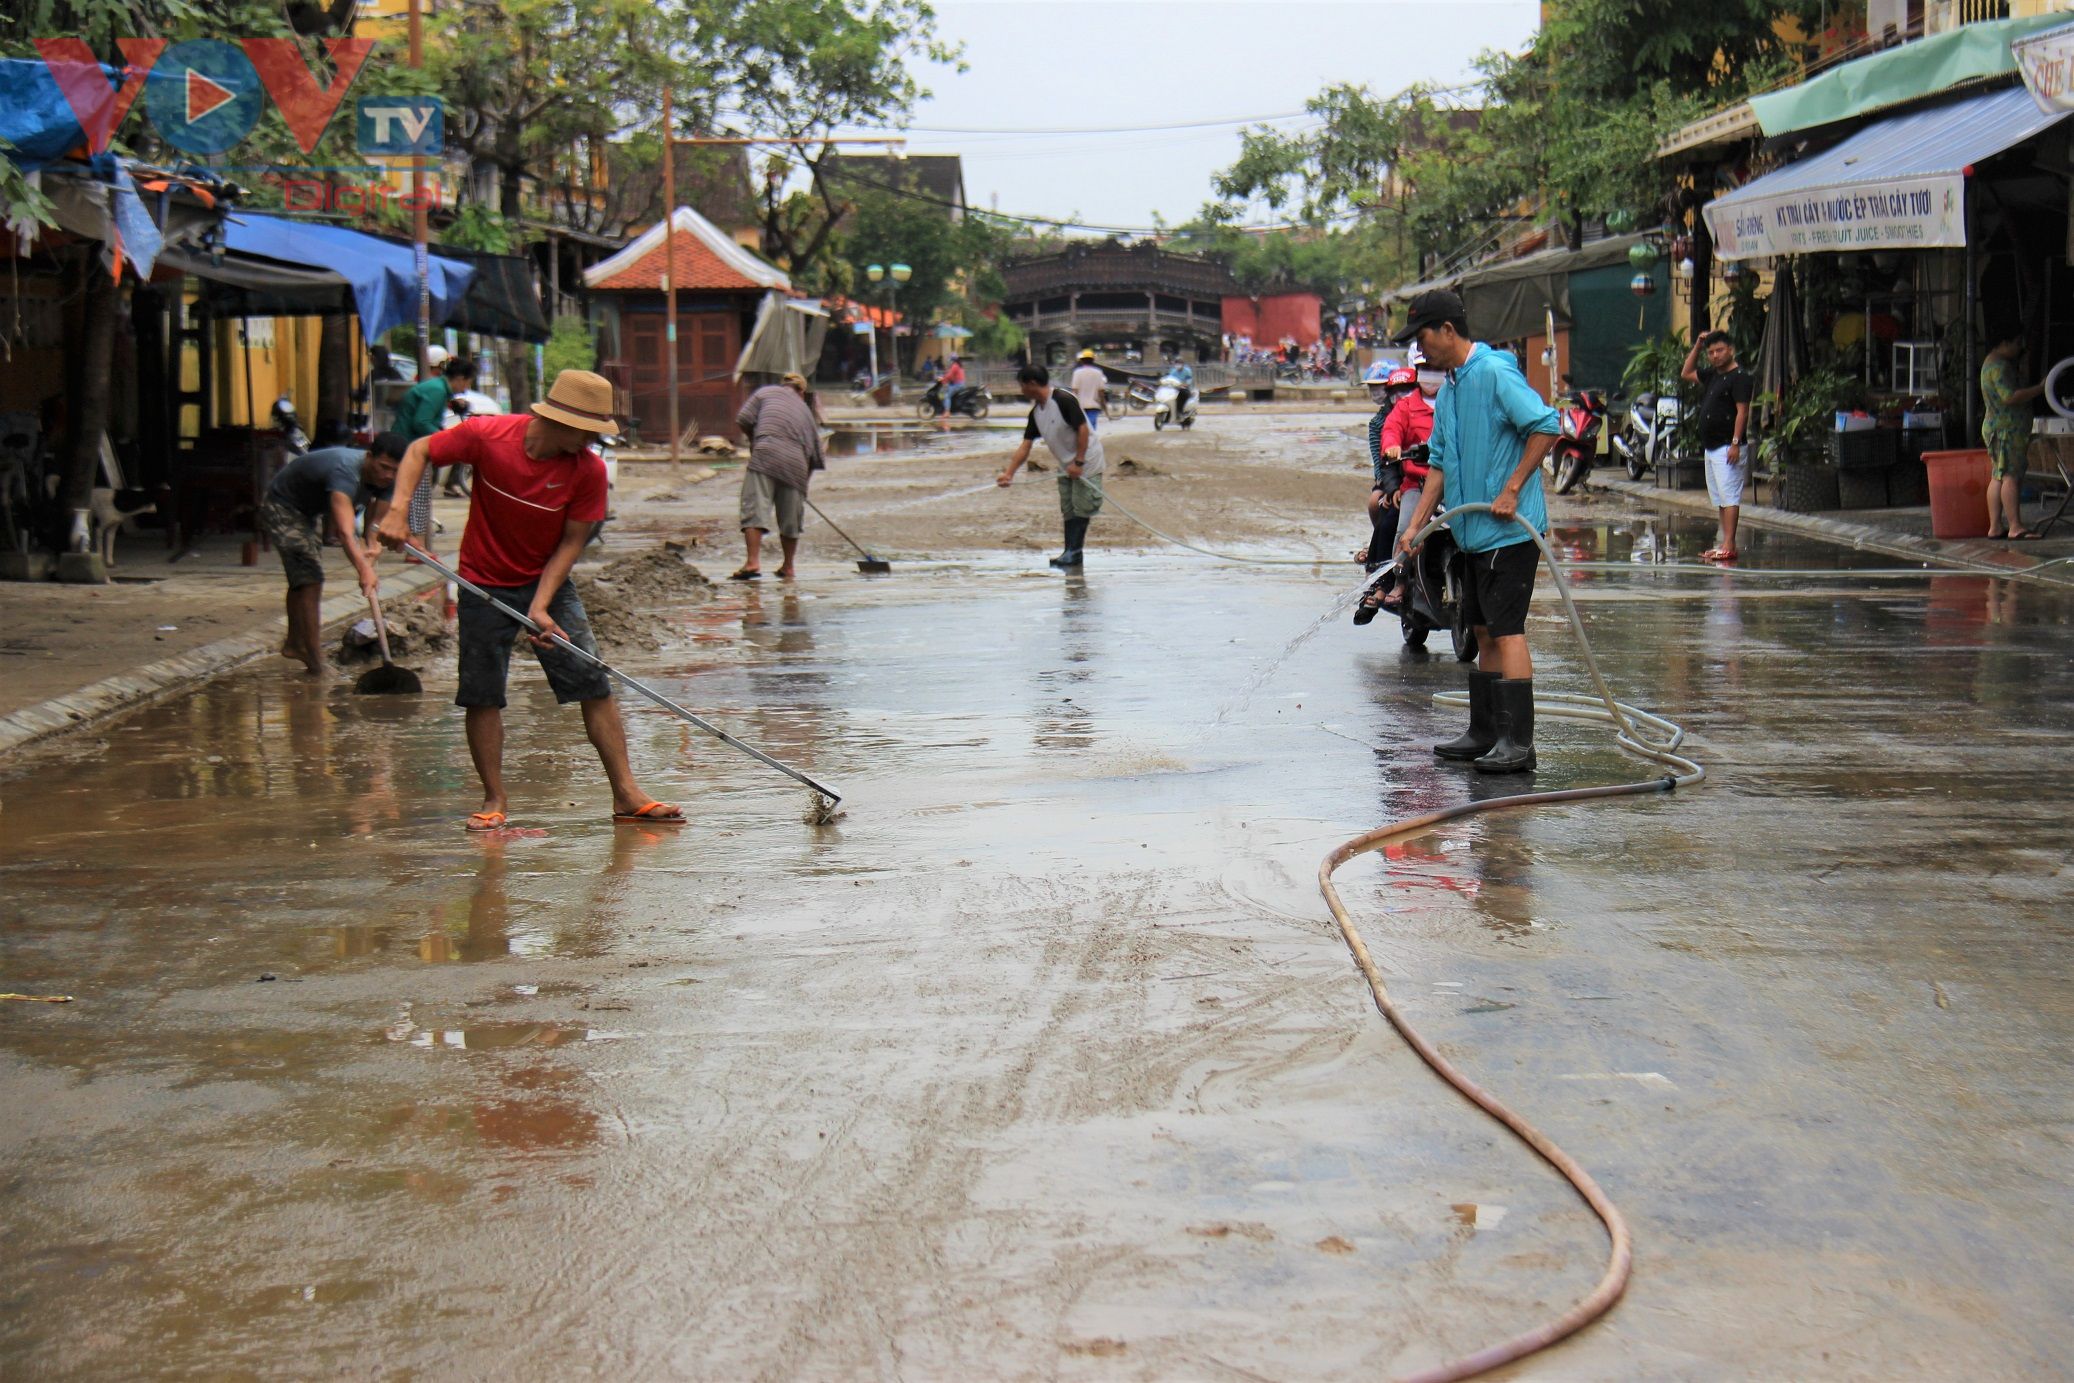 Hơn 150 người dọn bùn non đang tràn ngập phố cổ Hội An - Ảnh 9.